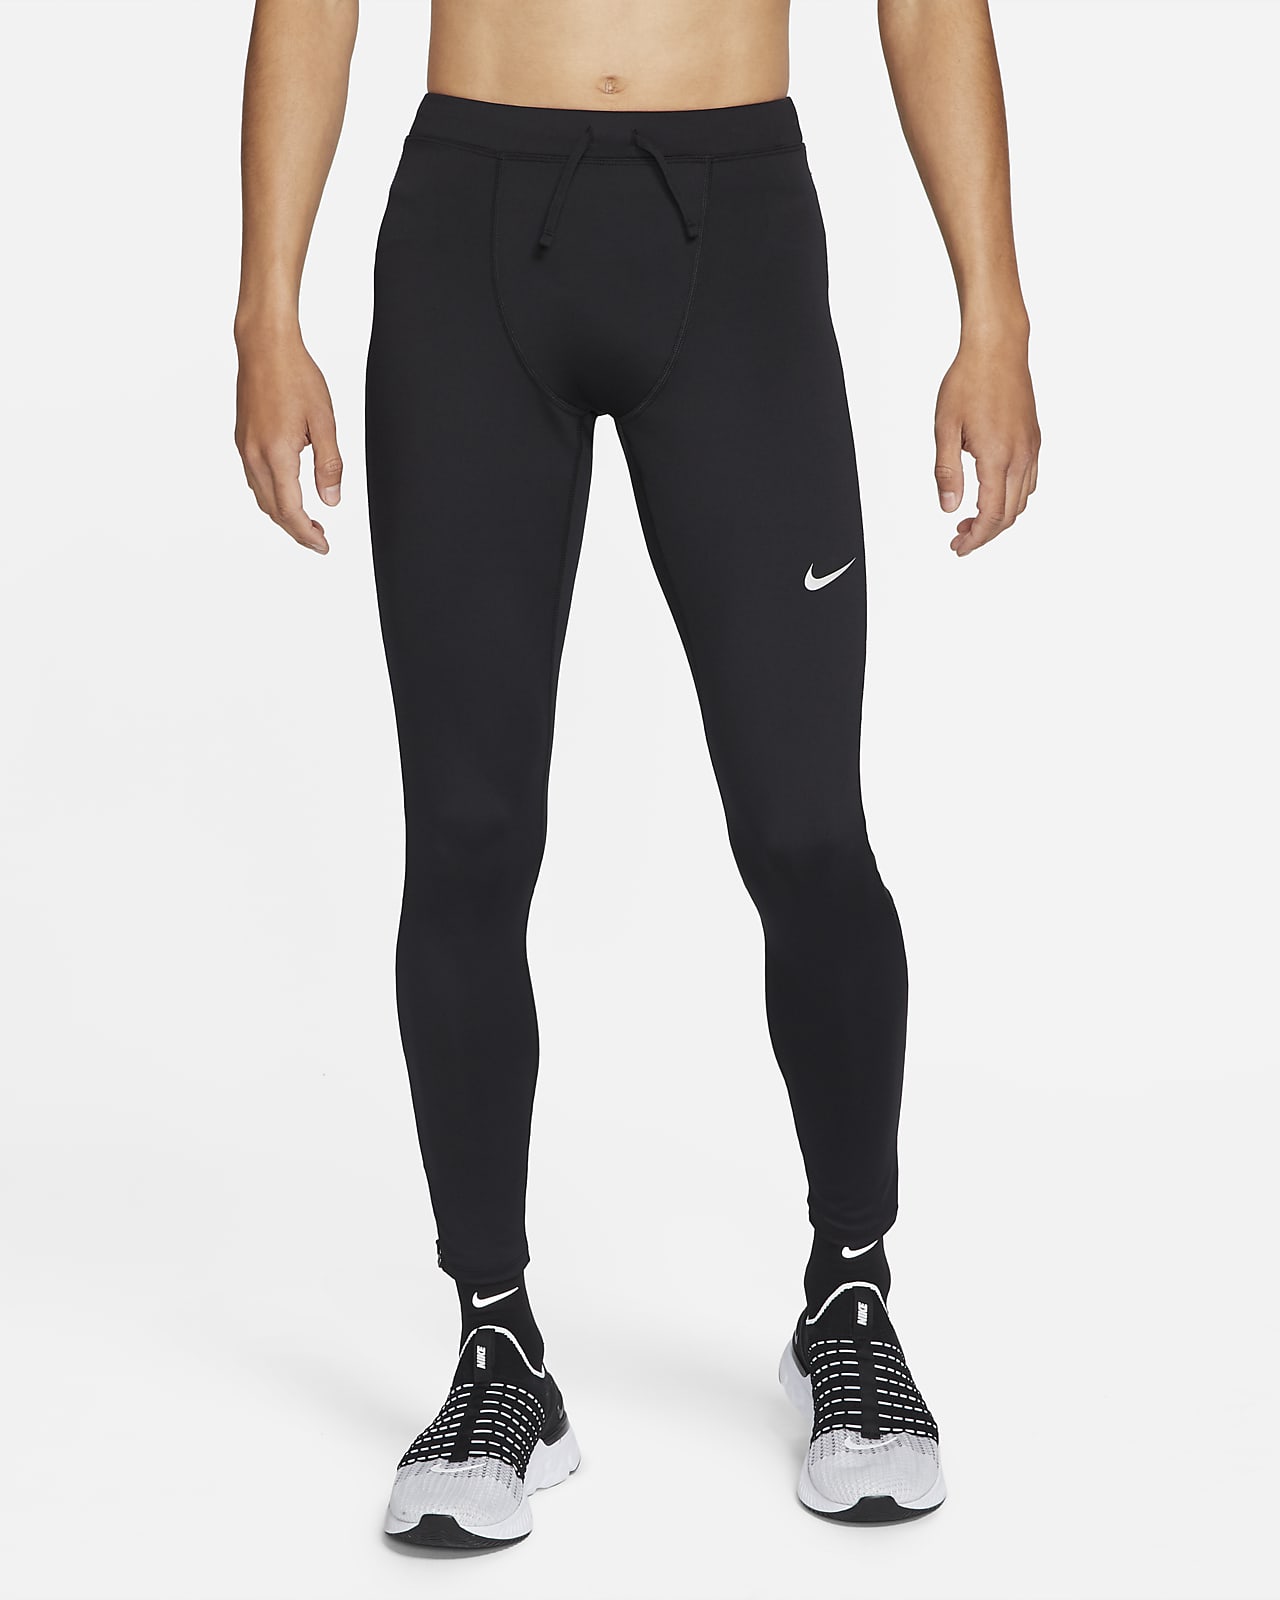 กางเกงวิ่งรัดรูปผู้ชาย Nike Dri-FIT Challenger